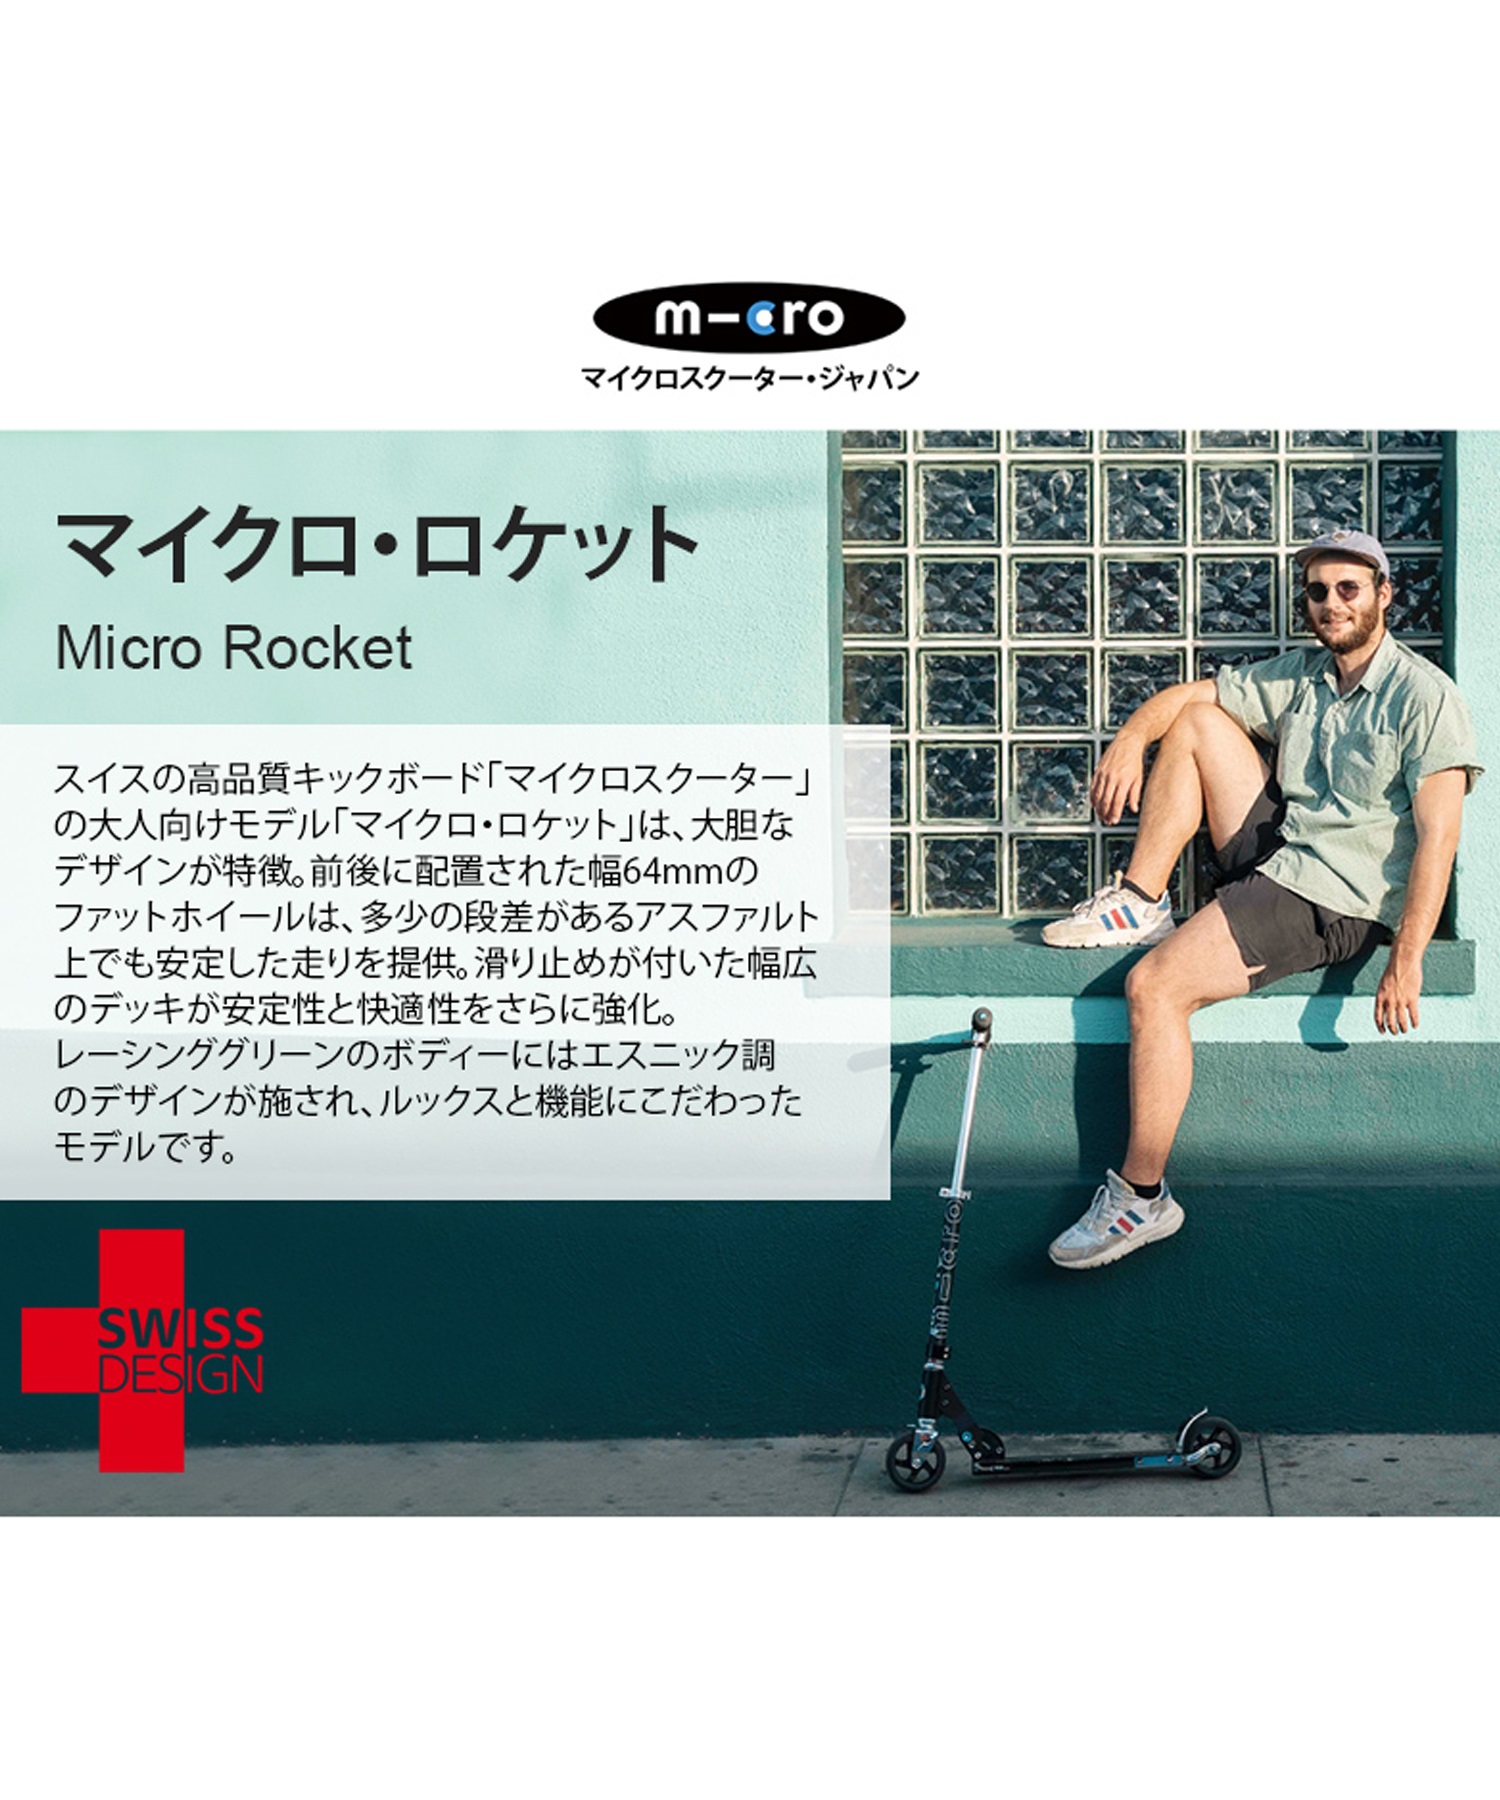 キッズ キックボード m-cro マイクロスクーター マイクロ ロケットBlack SA0048 KK K1(ONECOLOR-ONESIZE)